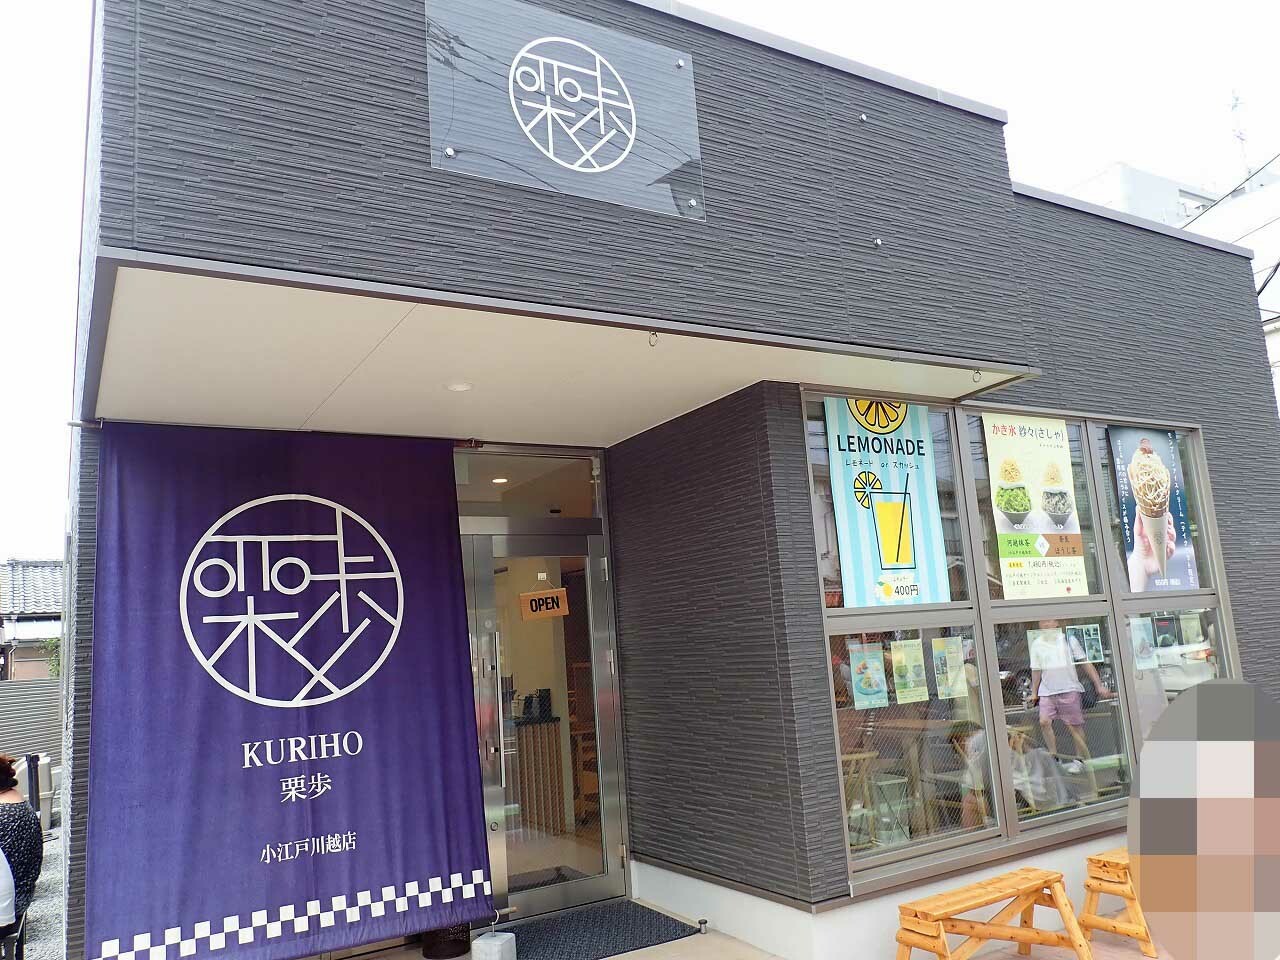 「和栗モンブラン専門店-栗歩-」は川越市役所の近くにあります